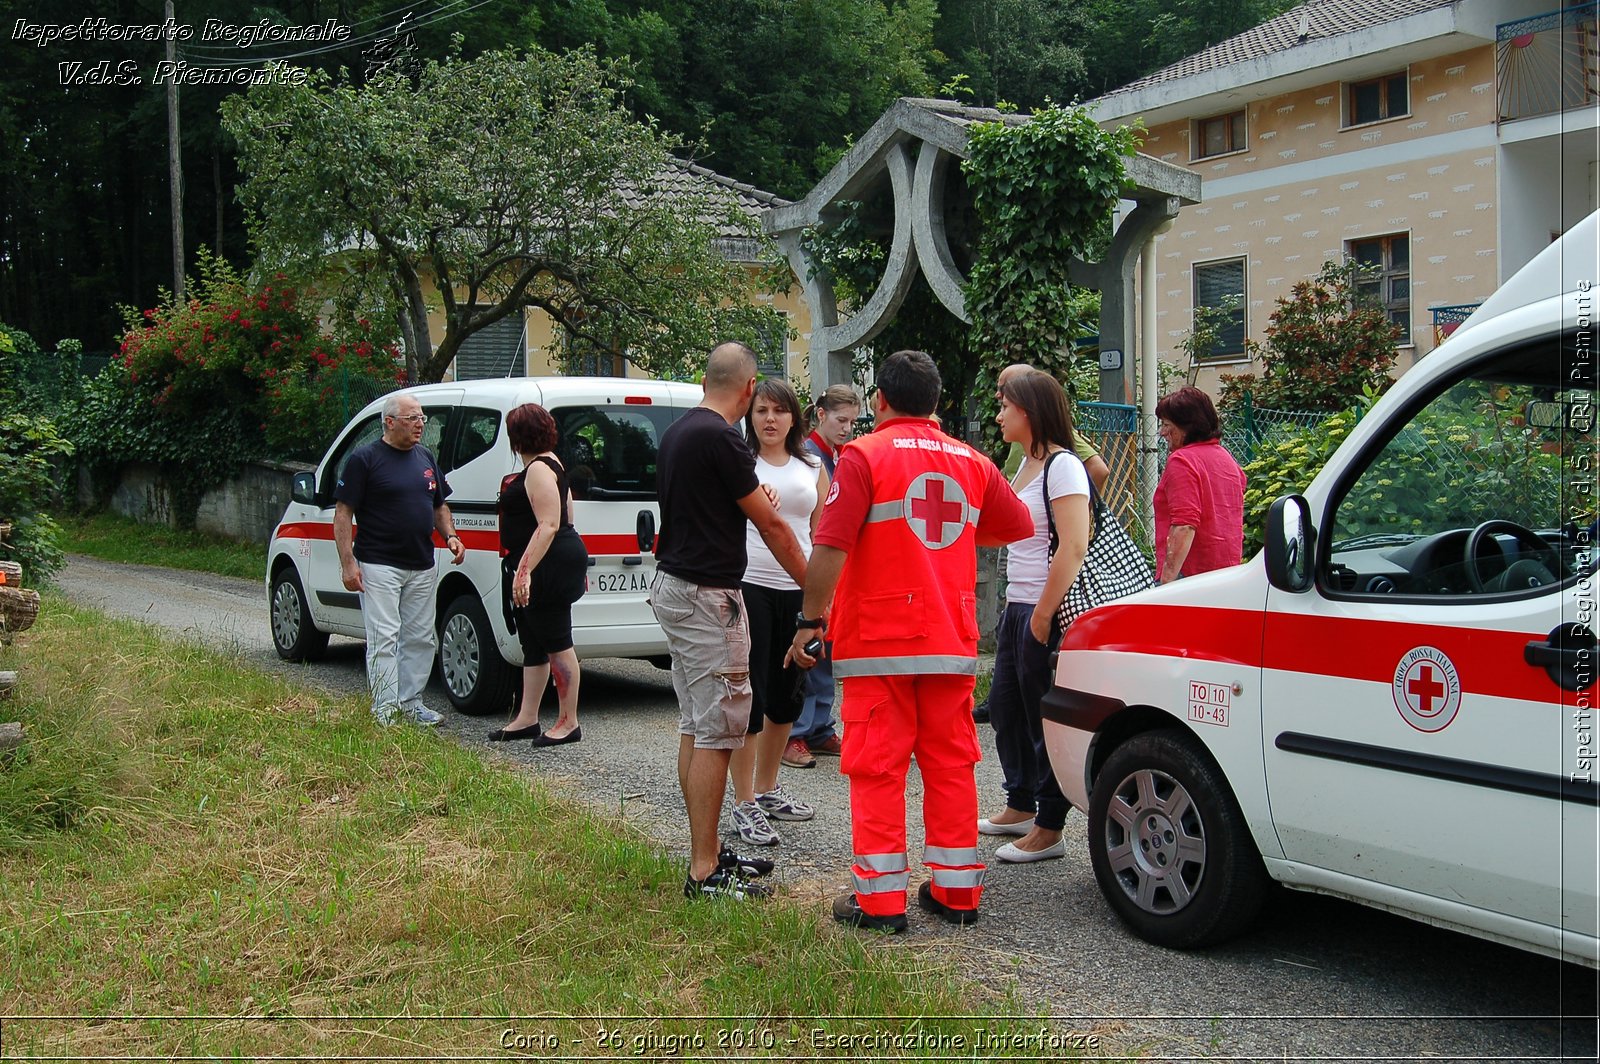 Corio - 26 giugno 2010 - Esercitazione Interforze -  Croce Rossa Italiana - Ispettorato Regionale Volontari del Soccorso Piemonte